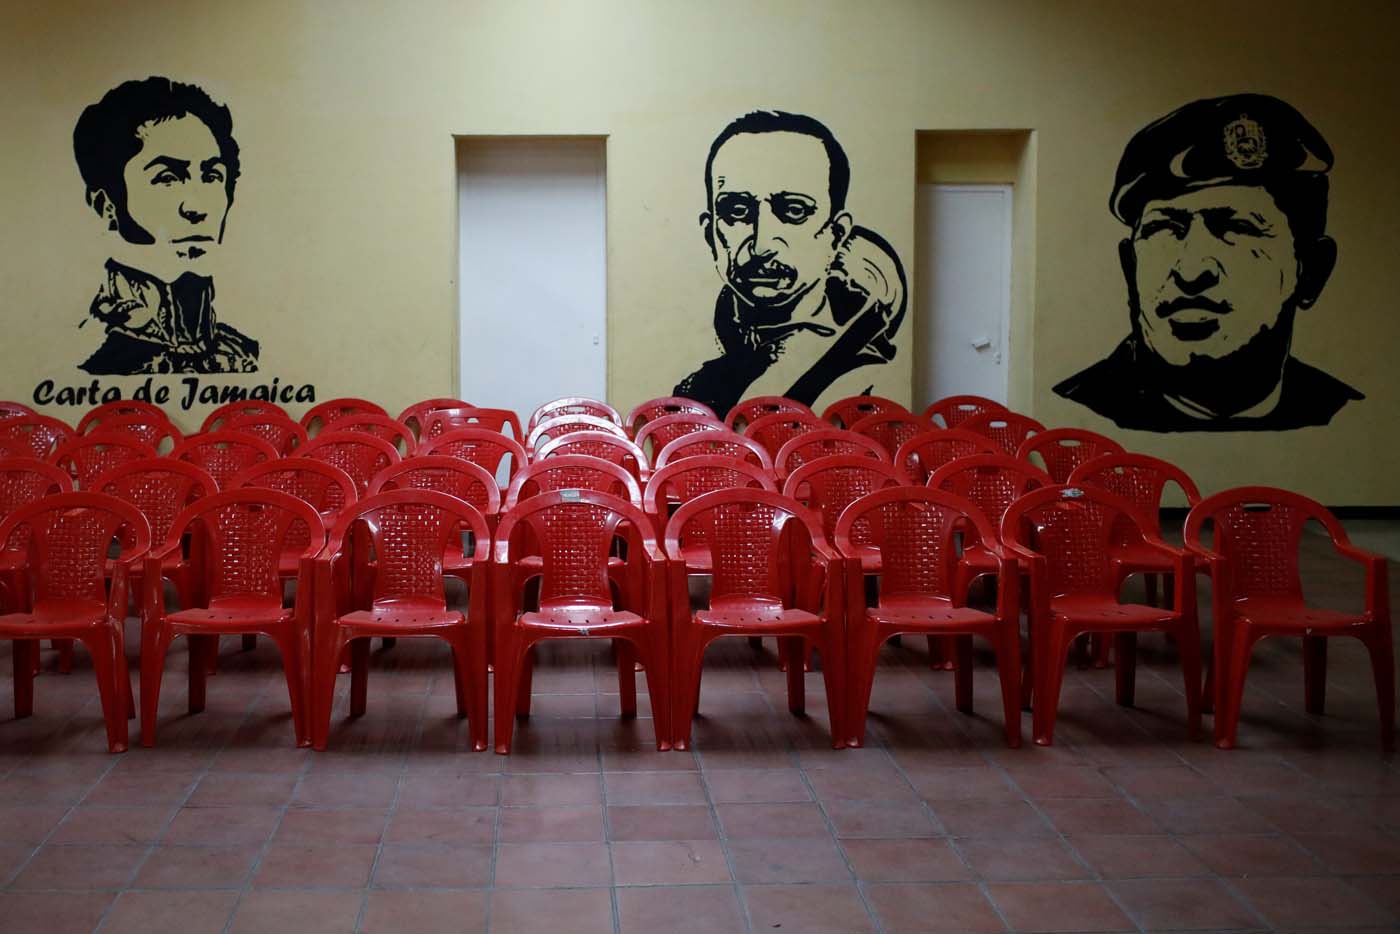 La oposición dividida ante la nueva trampa electoral de Maduro